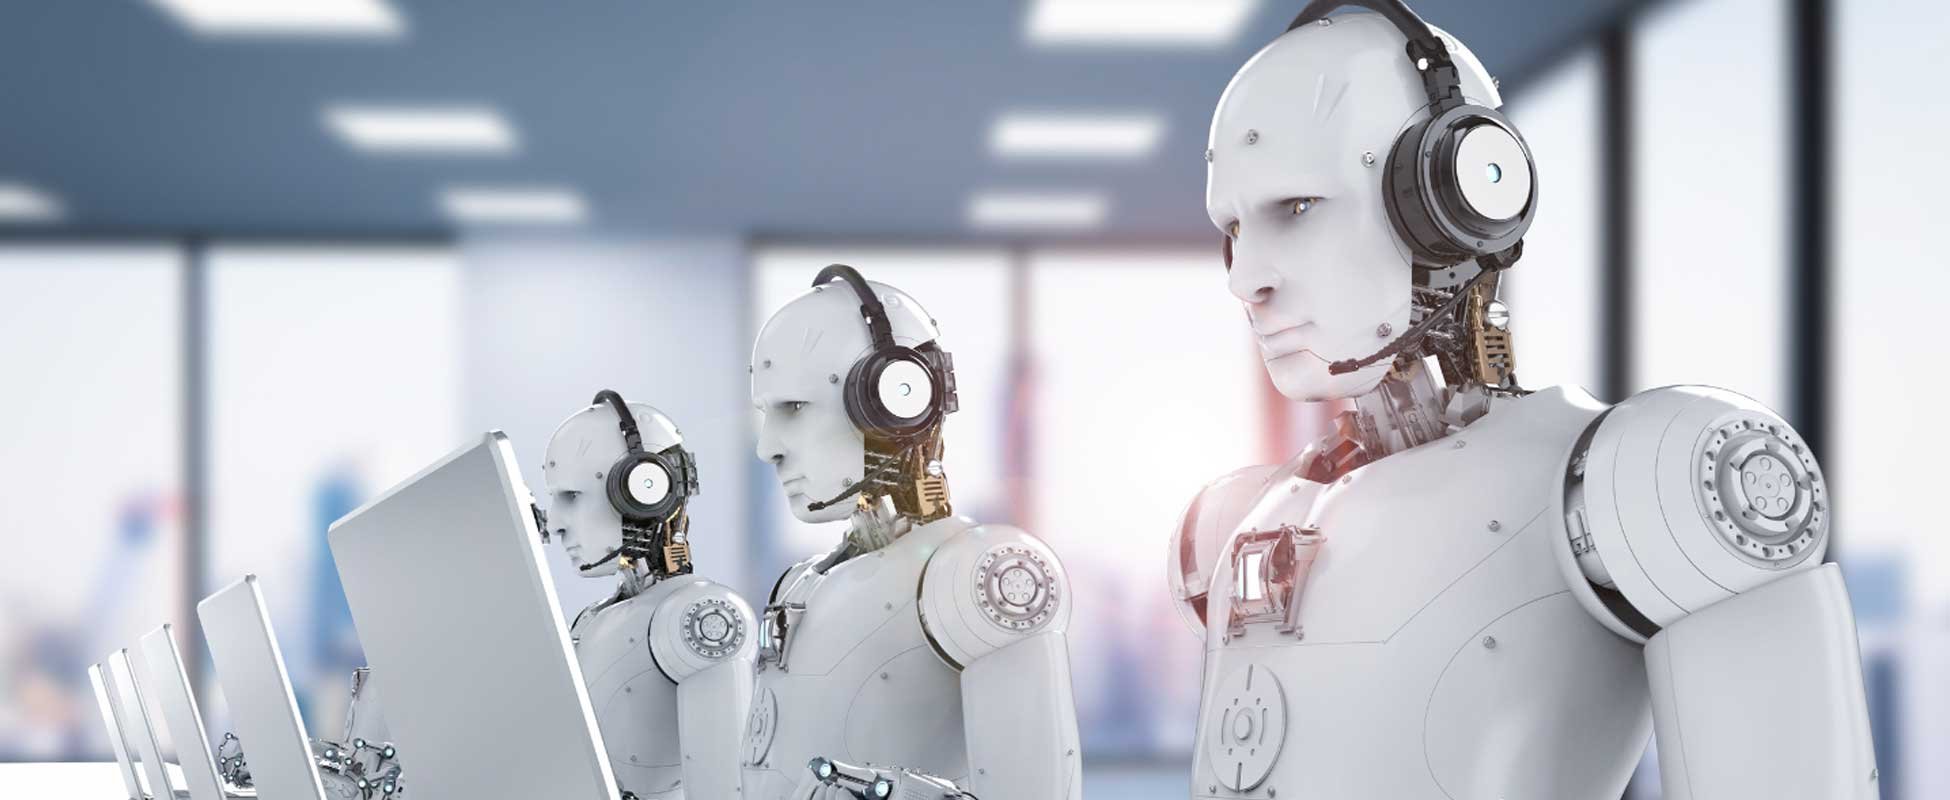 AI robots at a contact center